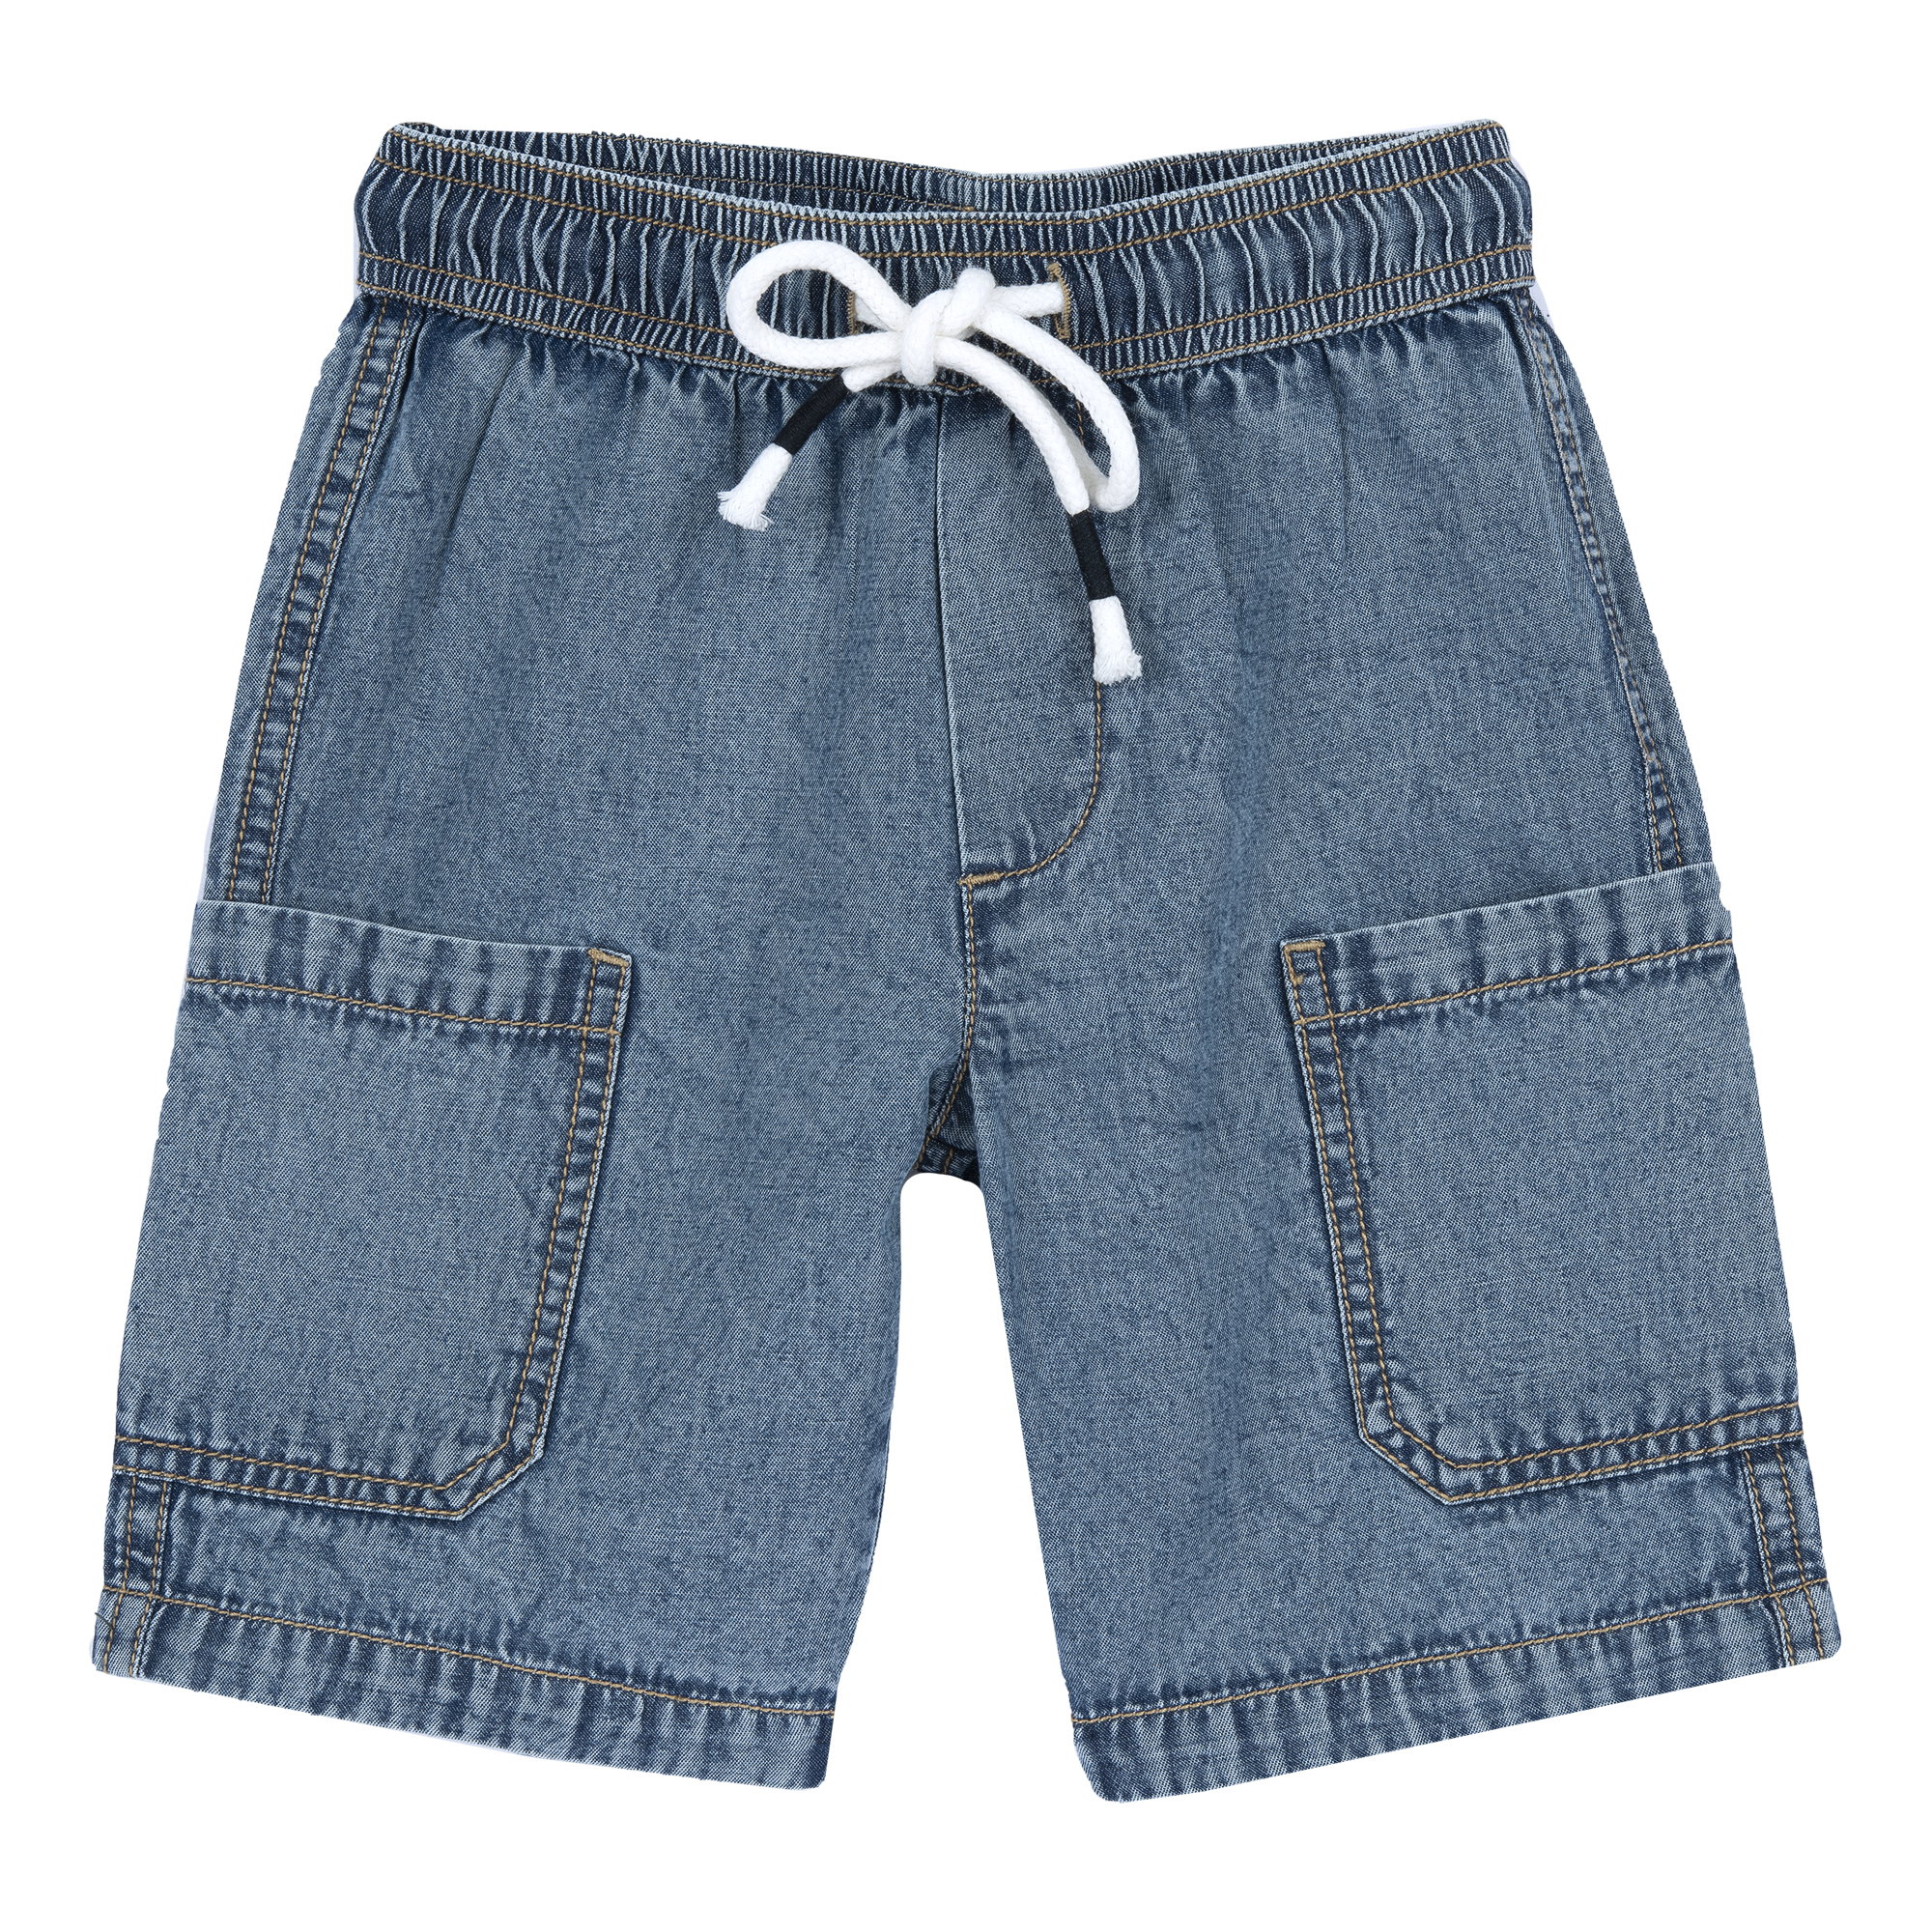 Pantaloni copii Chicco, albastru, 05830-66MC